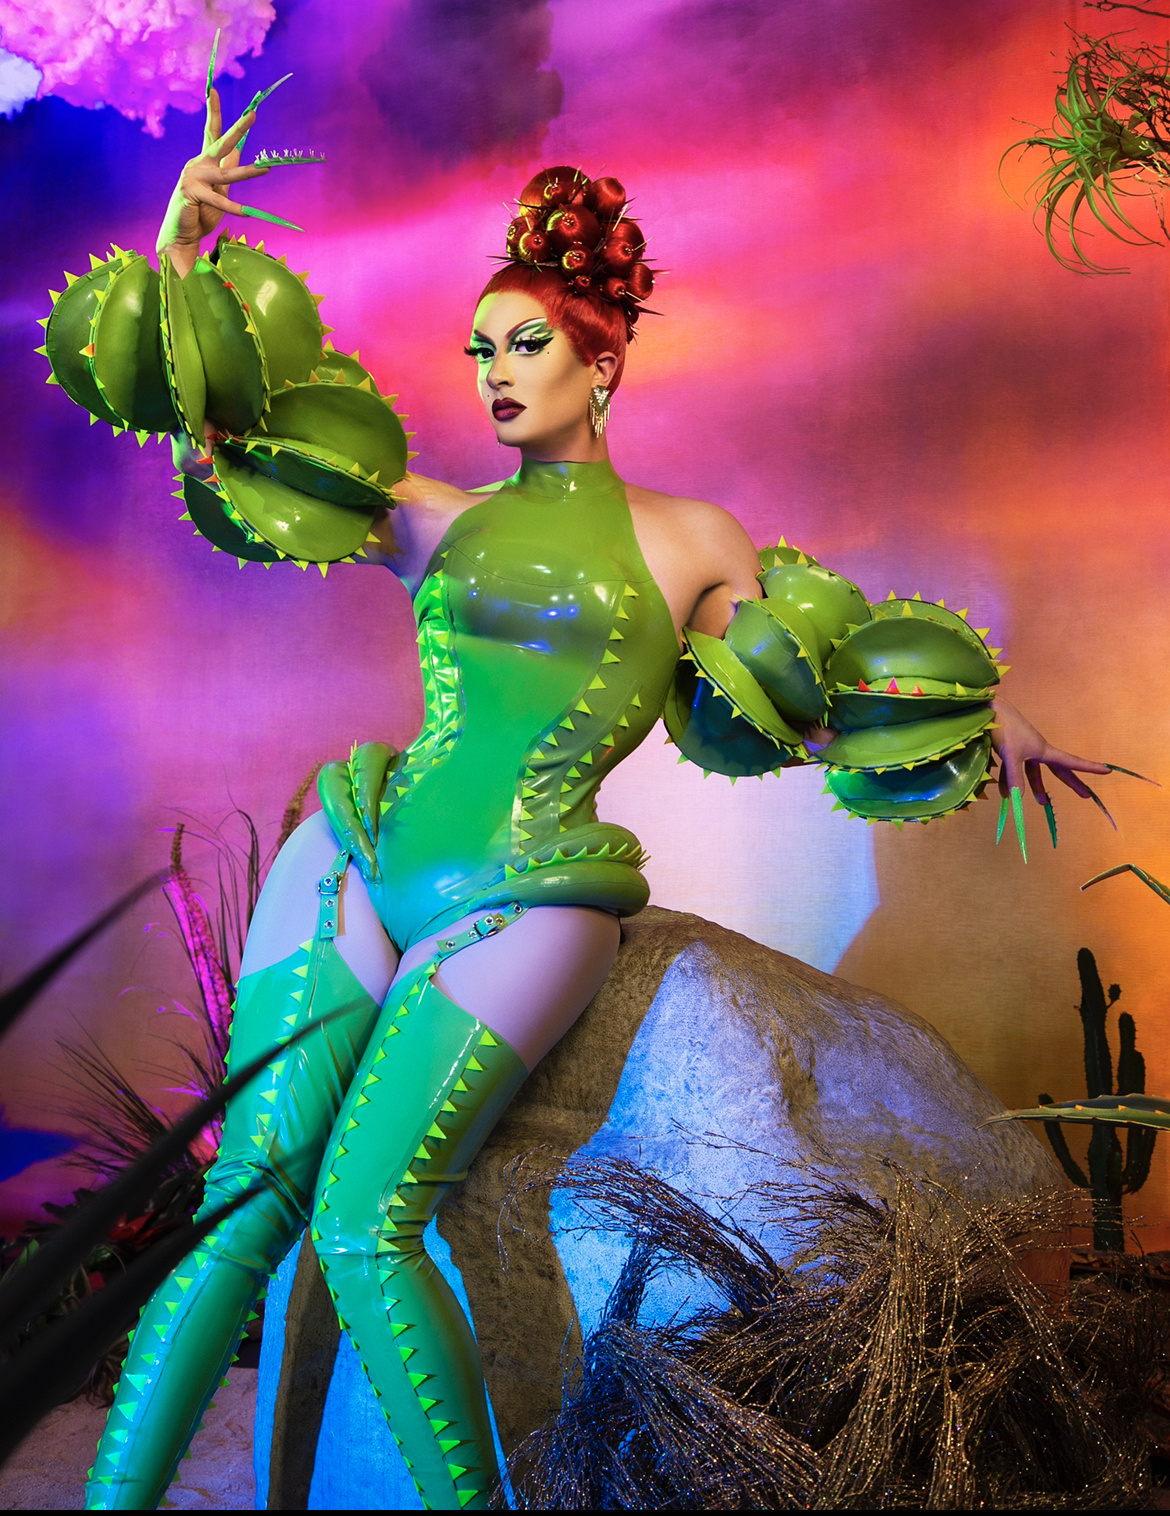 Drag queen Denali posa em fundo psicodélico vermelho e veste vestido verde com peruca ruiva.